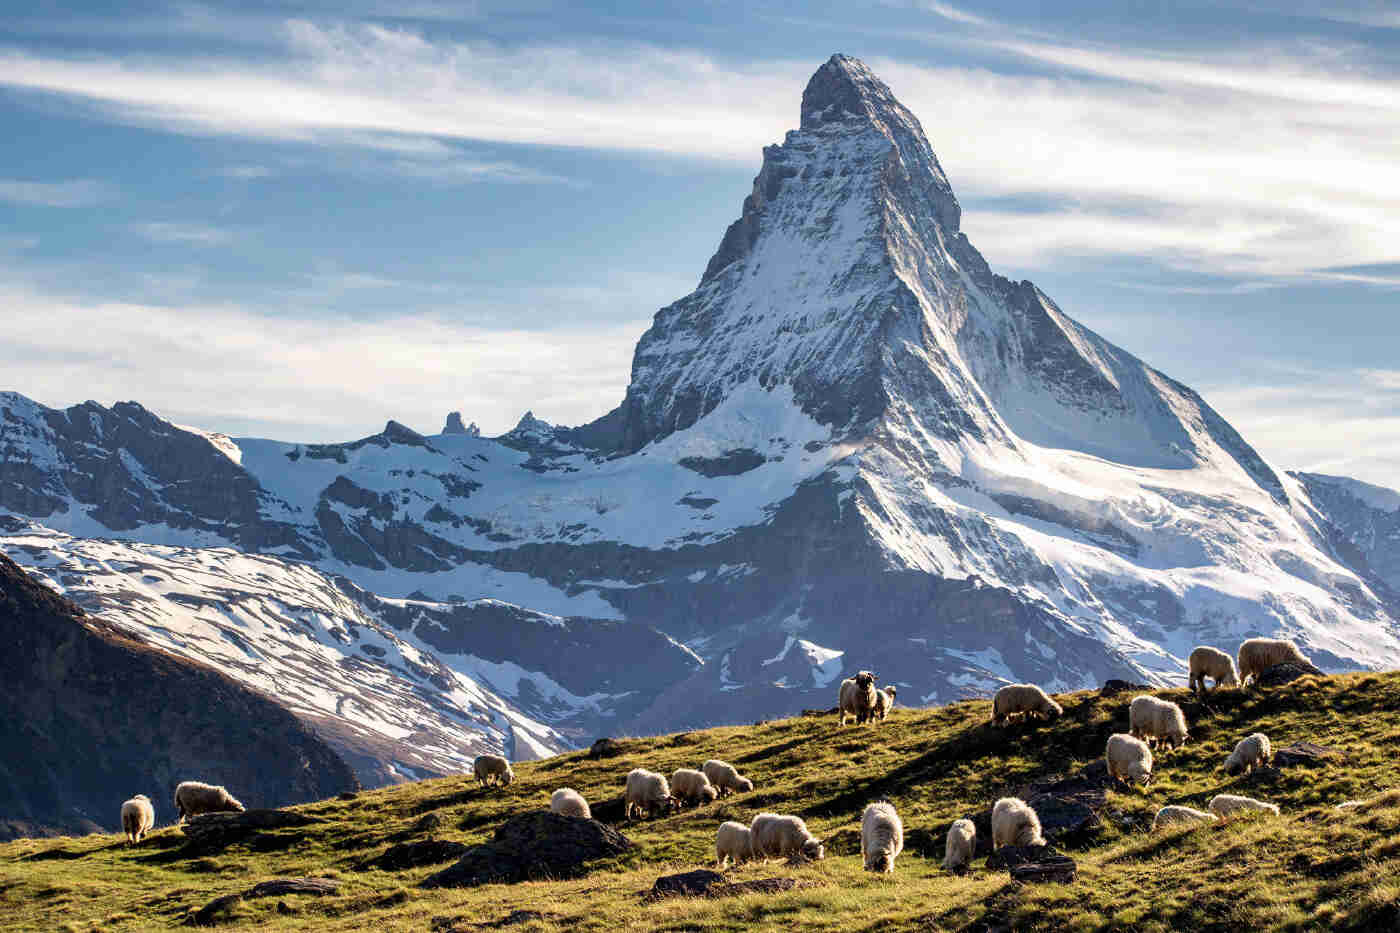 The Matterhorn - Education Republic